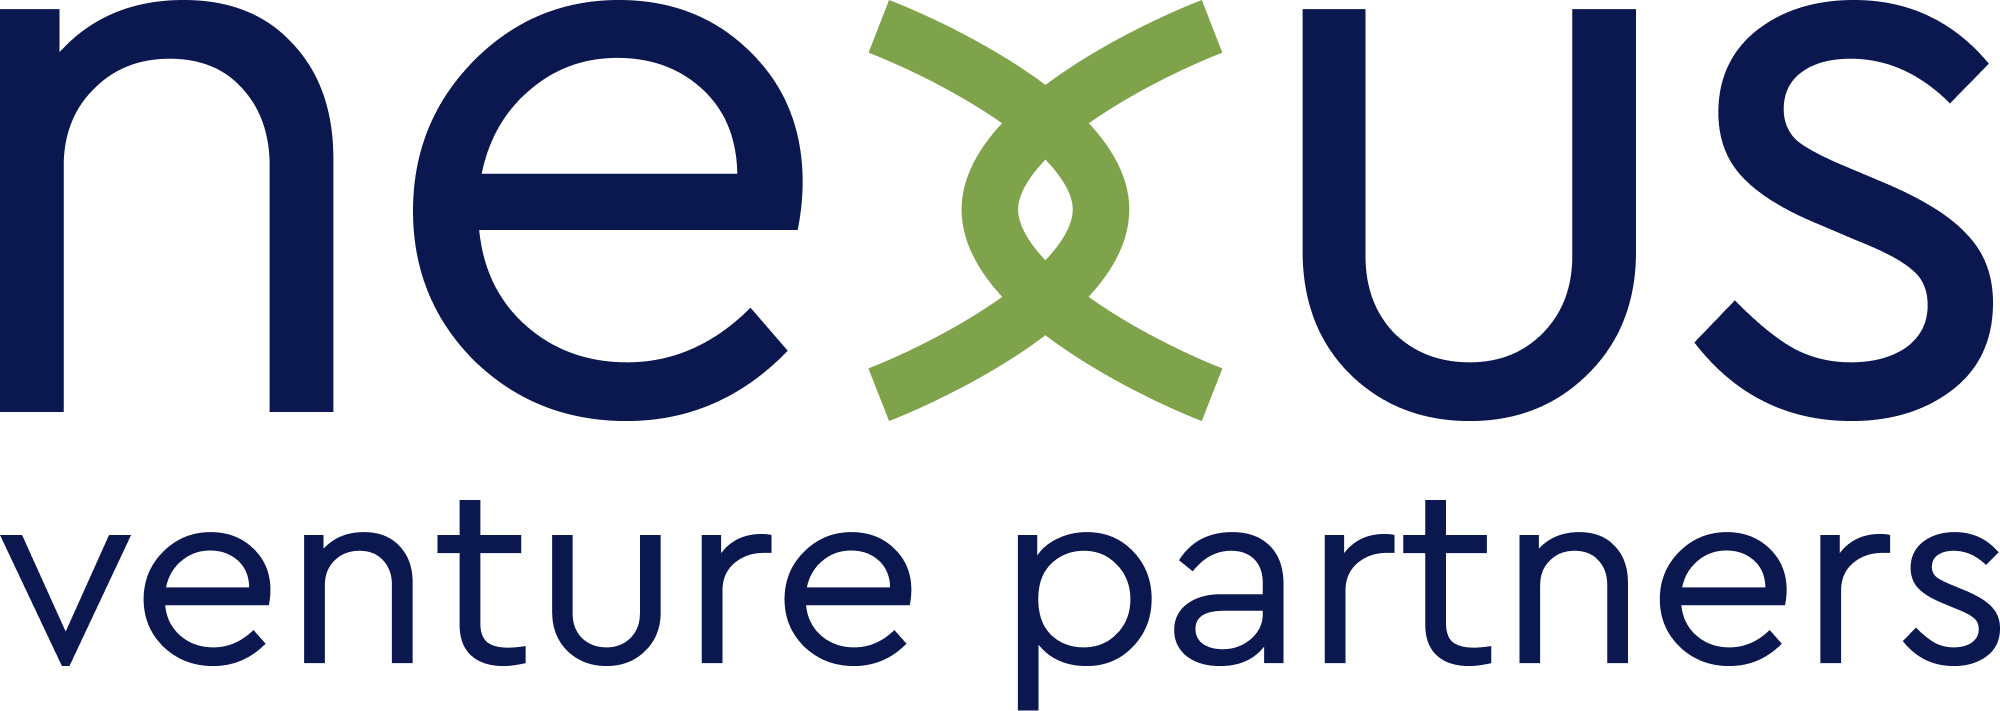 Nexus Venture Partners